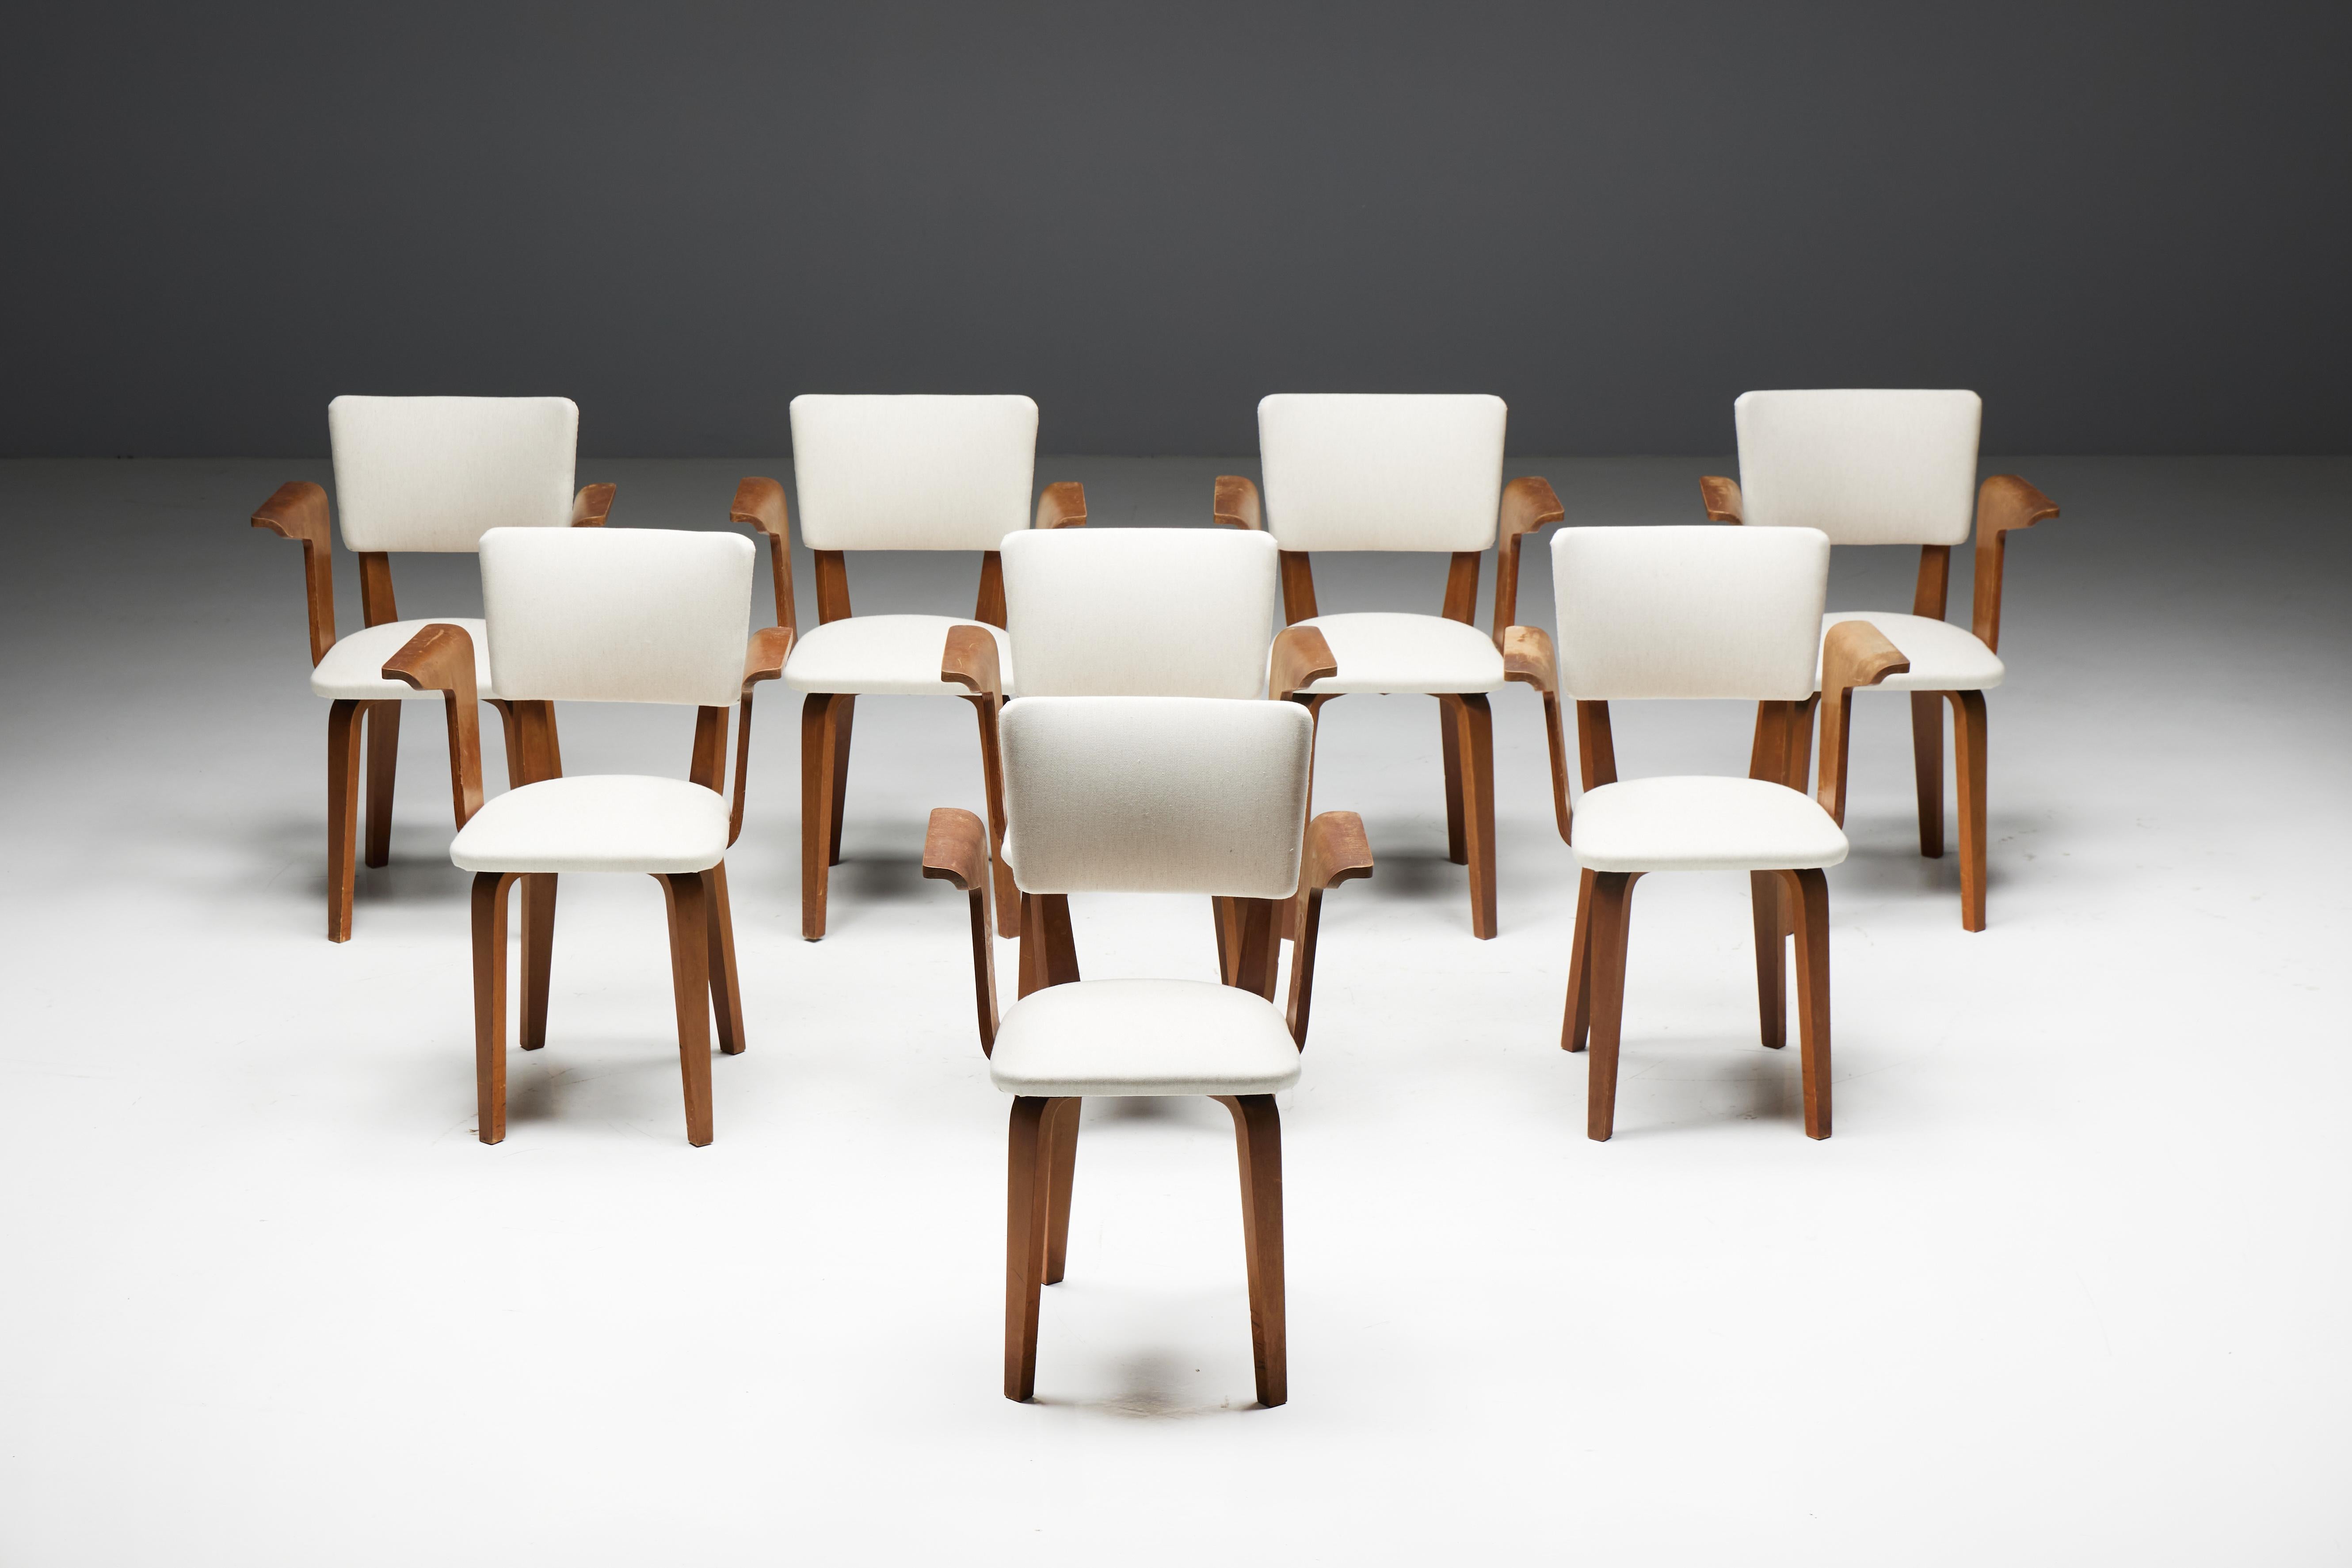 Fauteuils en contreplaqué au design hollandais du milieu du siècle, réalisés par COR/One pour Gouda den Boer, rappelant le célèbre style de Cees Braakman pour Pastoe. Fabriquées aux Pays-Bas vers 1950, ces chaises incarnent l'esprit du design de